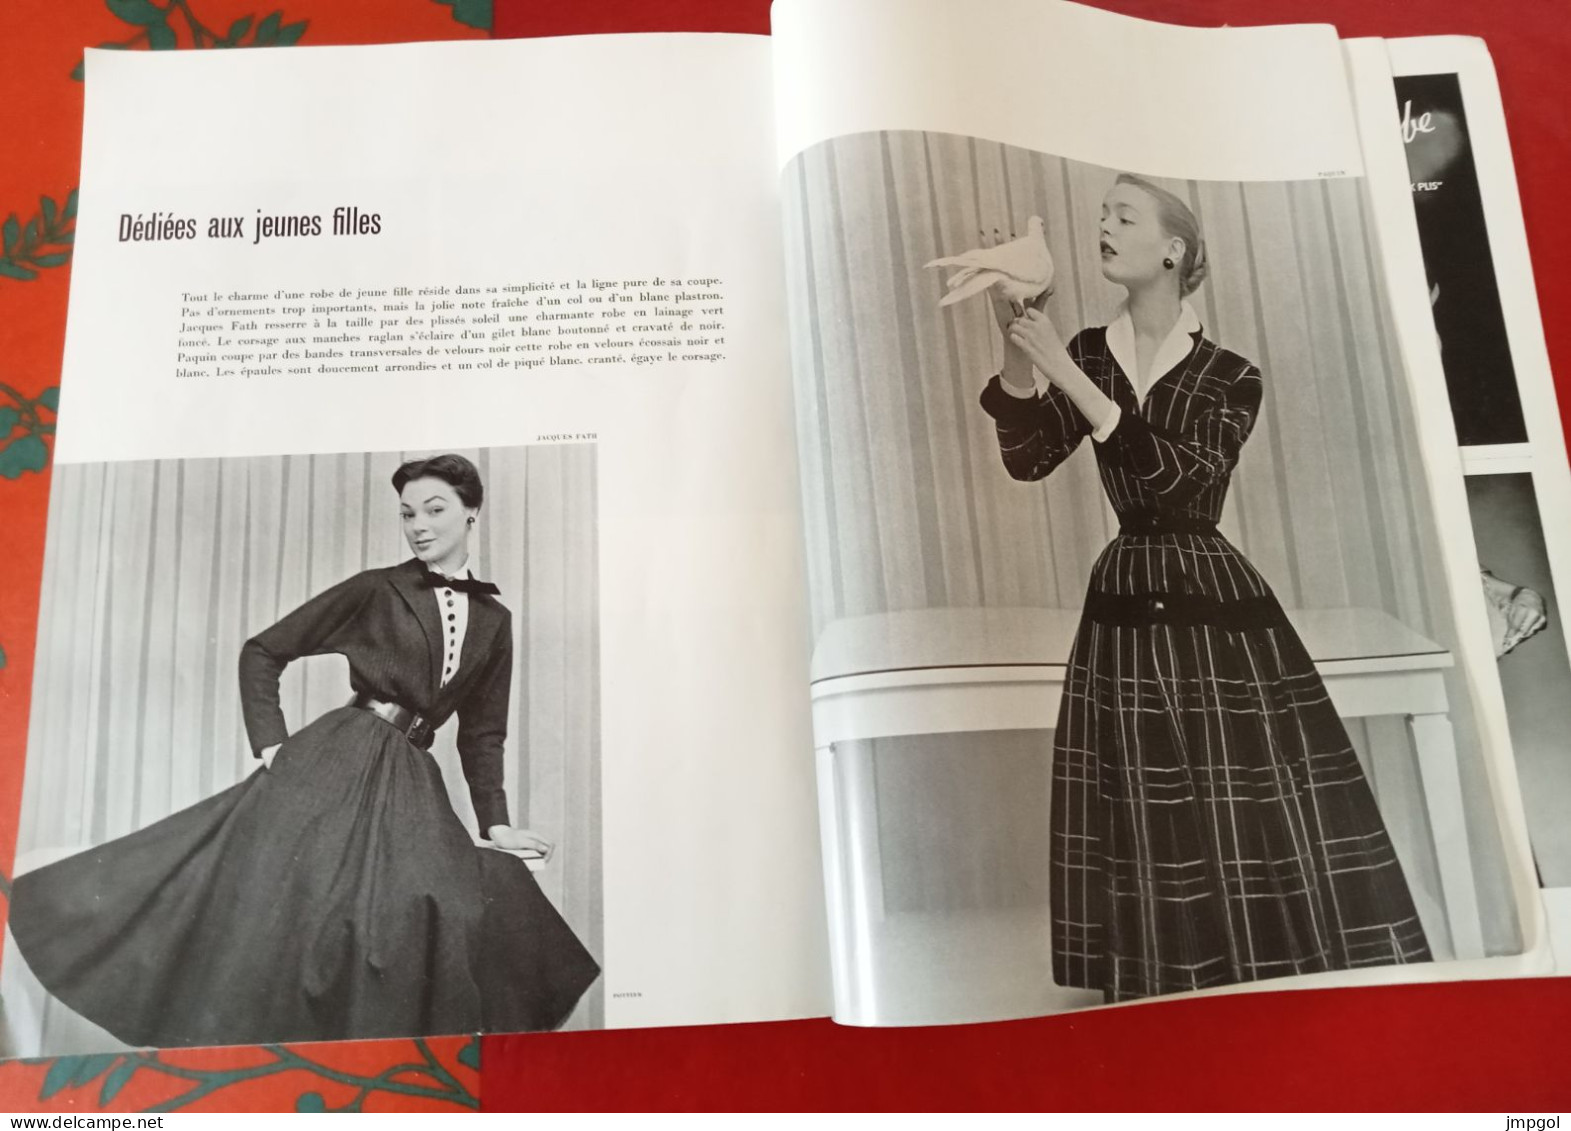 Officiel de la Mode et de la Couture Paris Octobre 1951 Complément Collections  Hiver Dior Lanvin Patou Fath Balenciaga